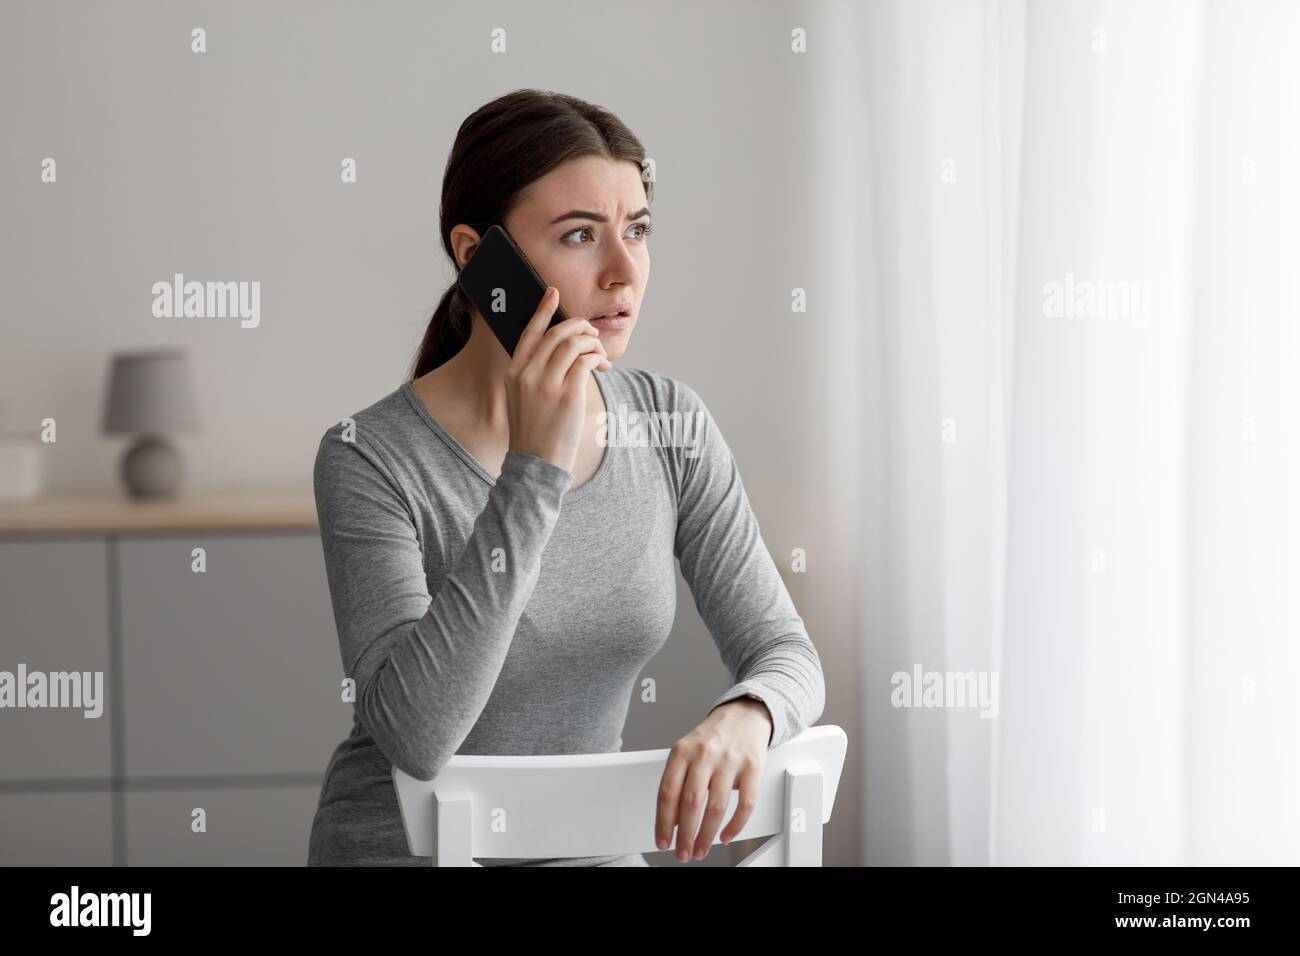 Un désespoir anxieux déprimé bouleversé une jeune femme caucasienne parlant par téléphone, a reçu de mauvaises nouvelles Banque D'Images